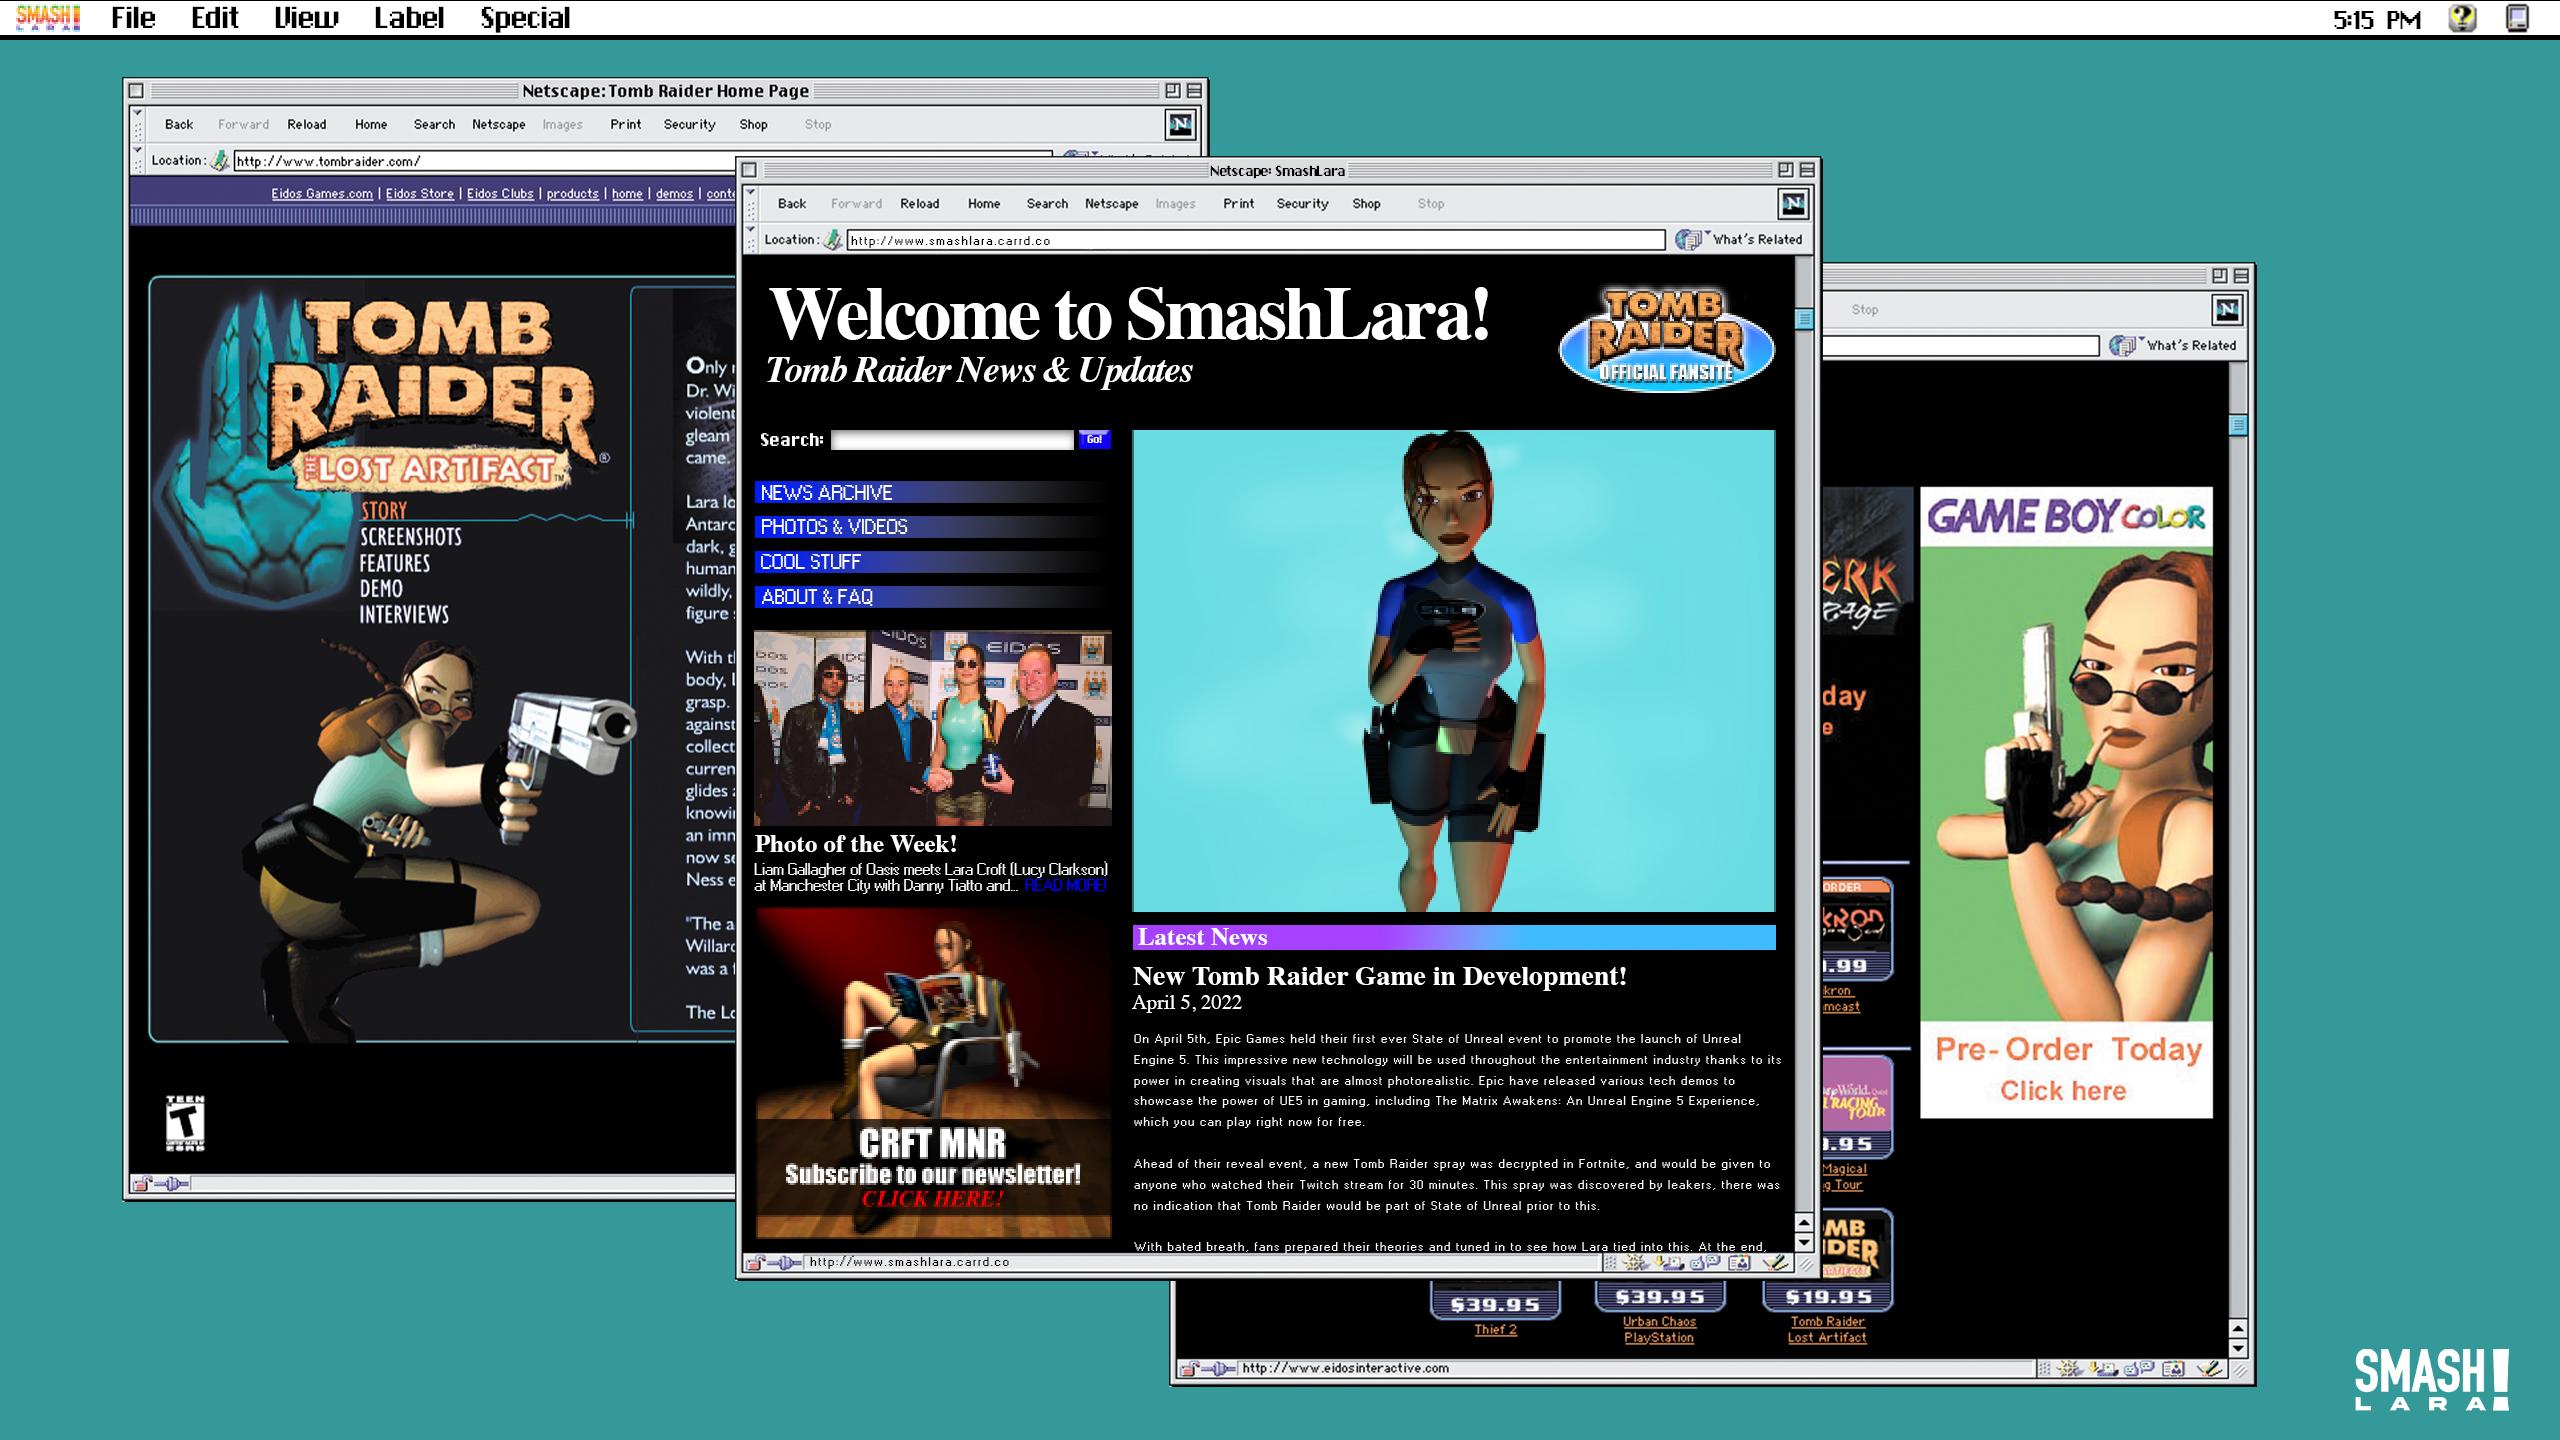 SmashLara website pages